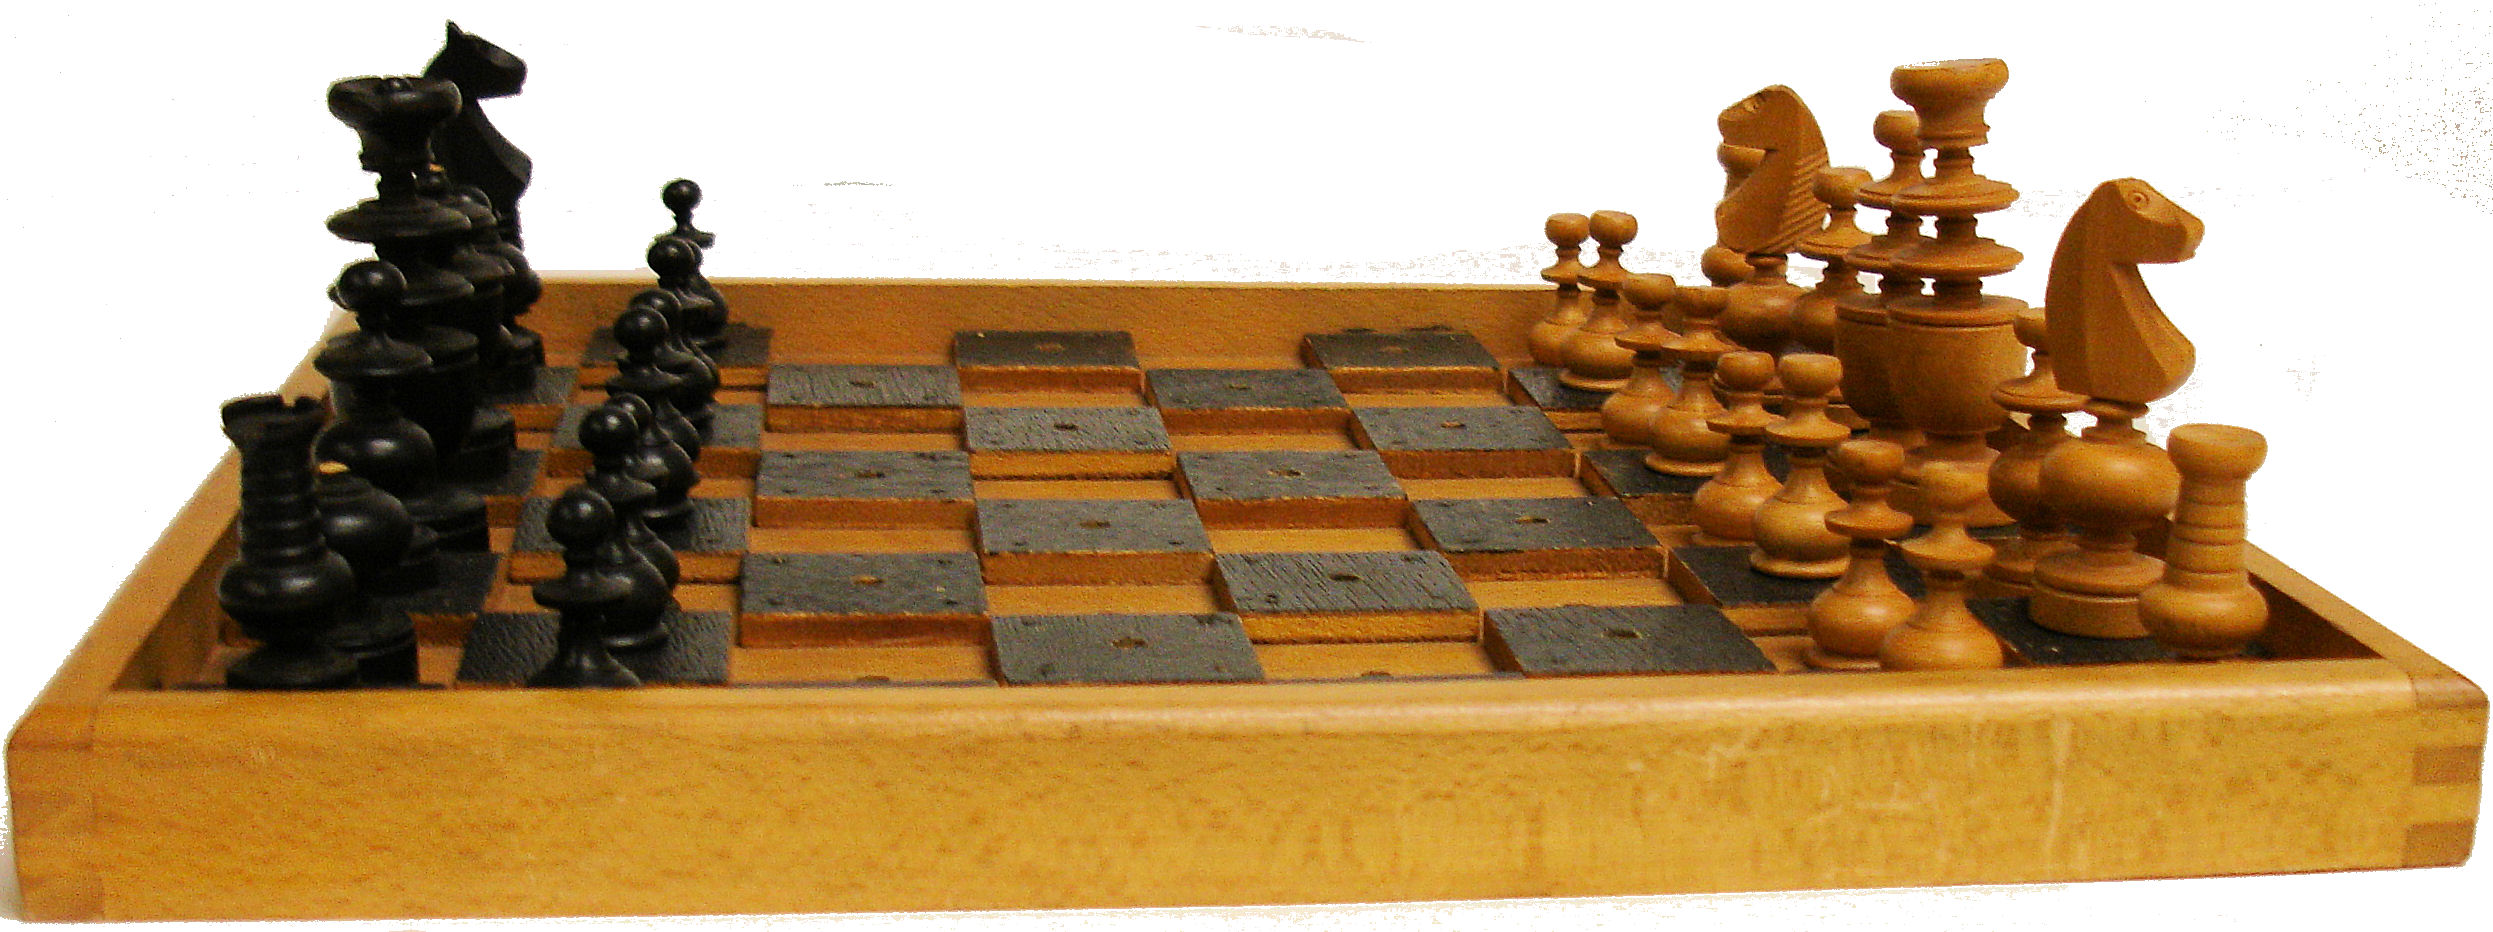 Braille chess set